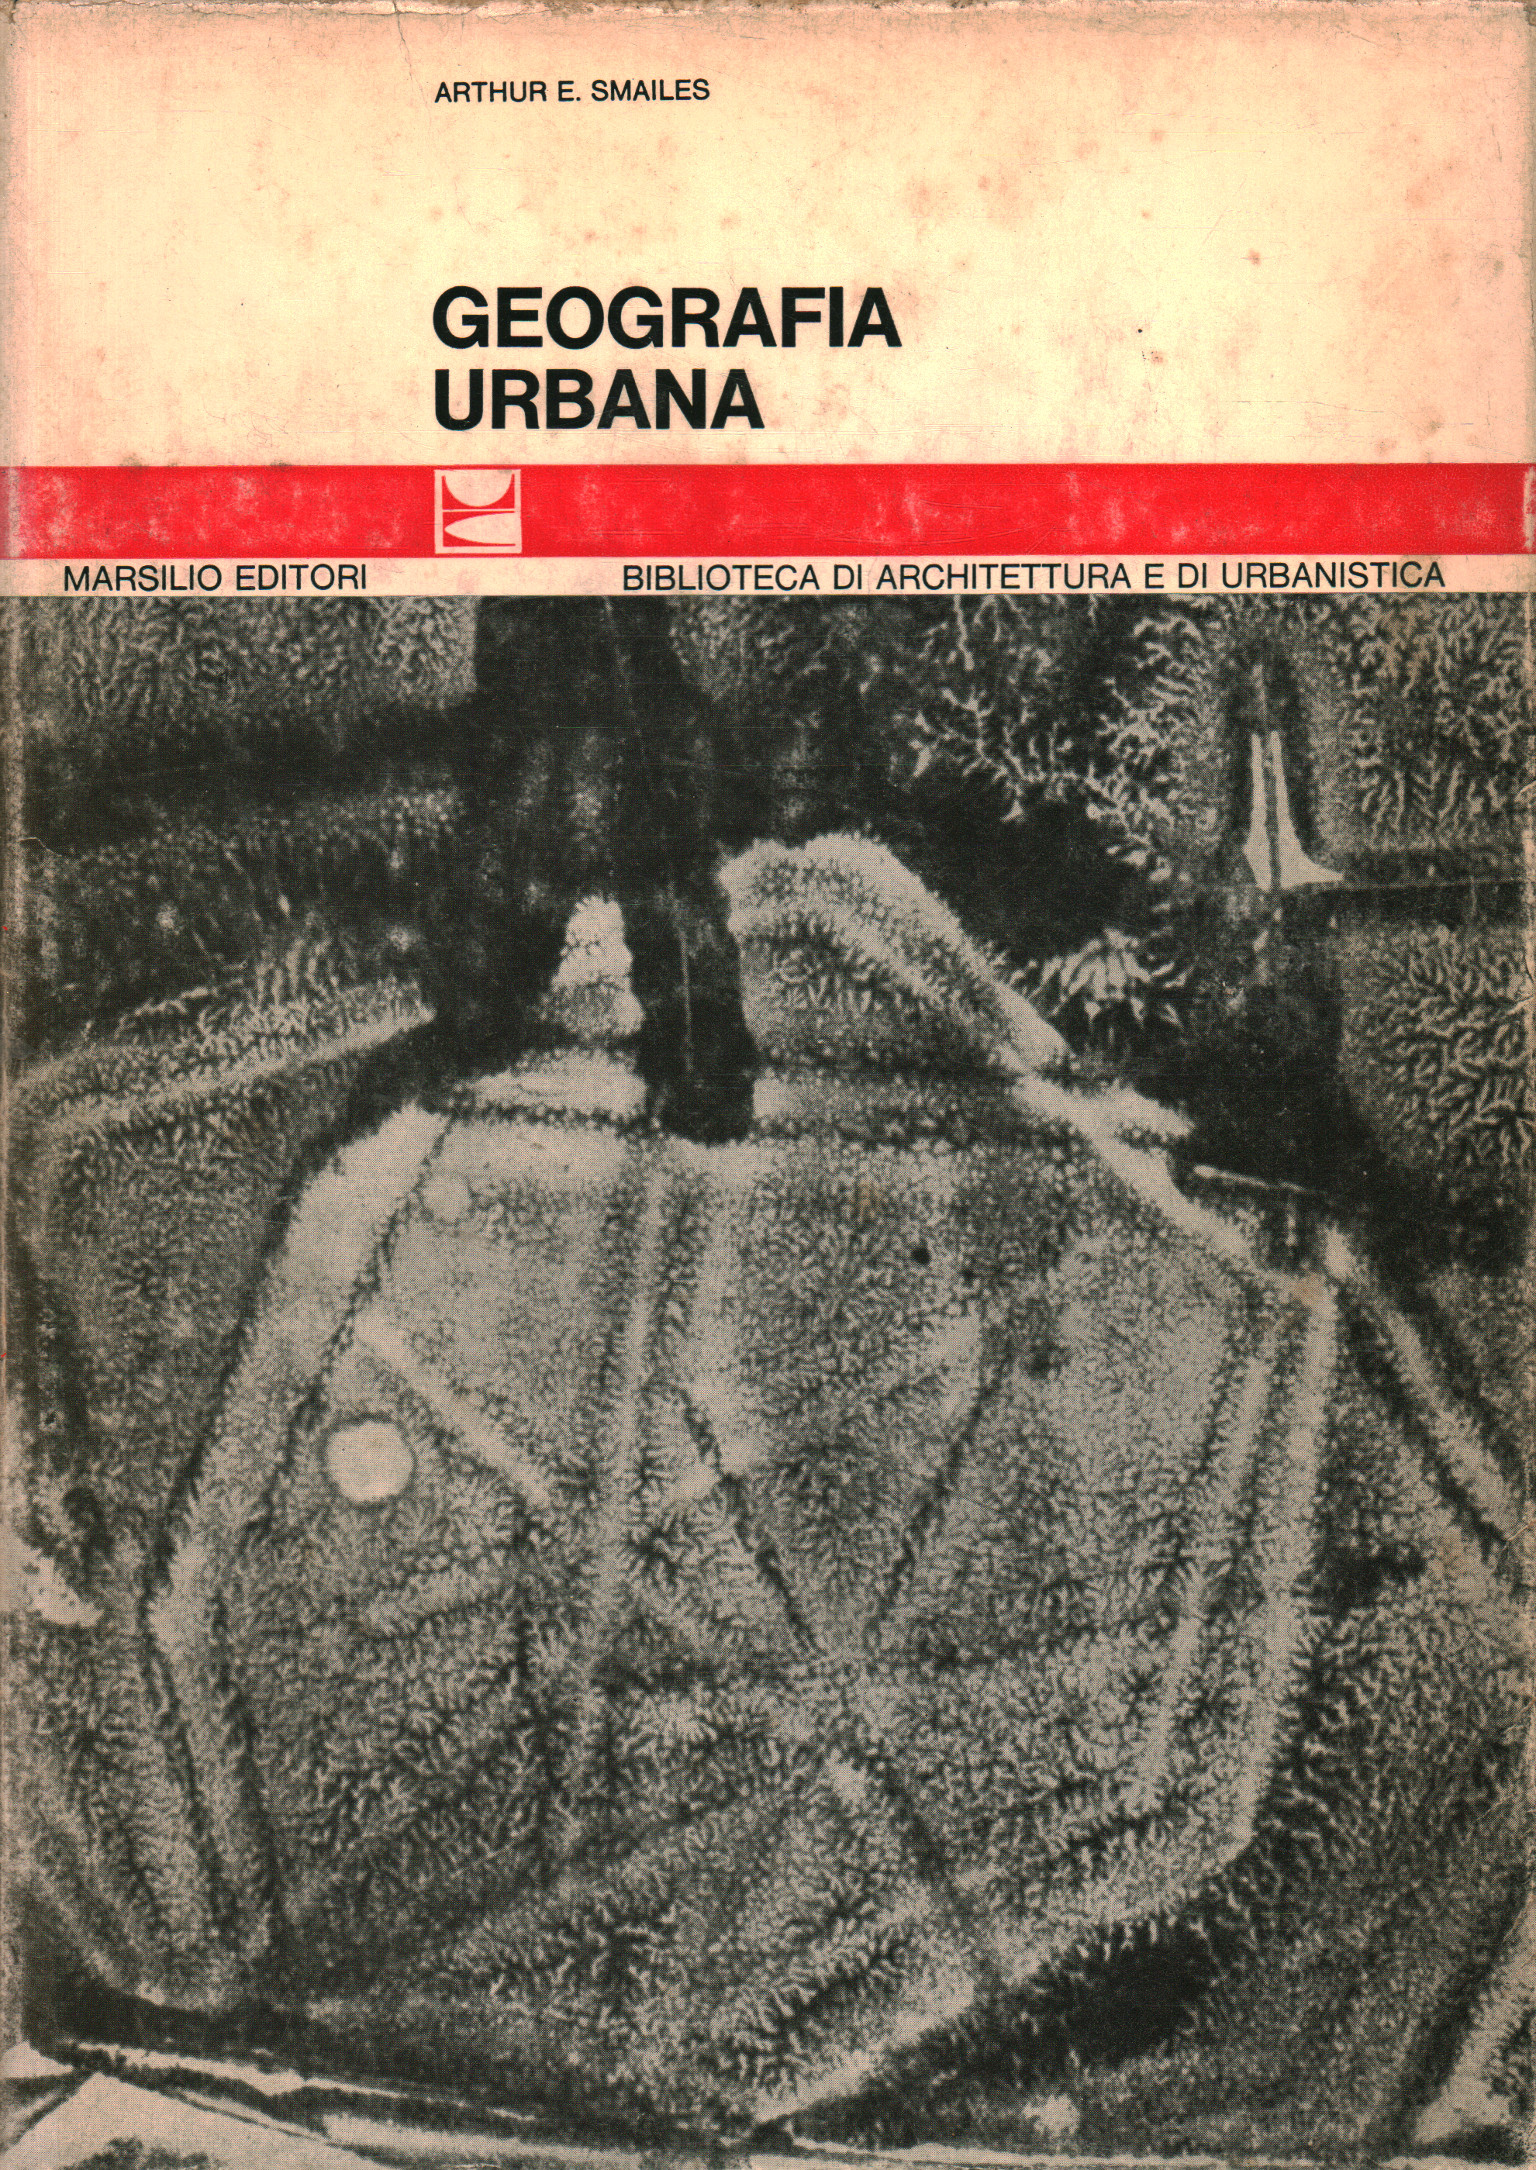 Géographie urbaine, Arthur E. Smailes